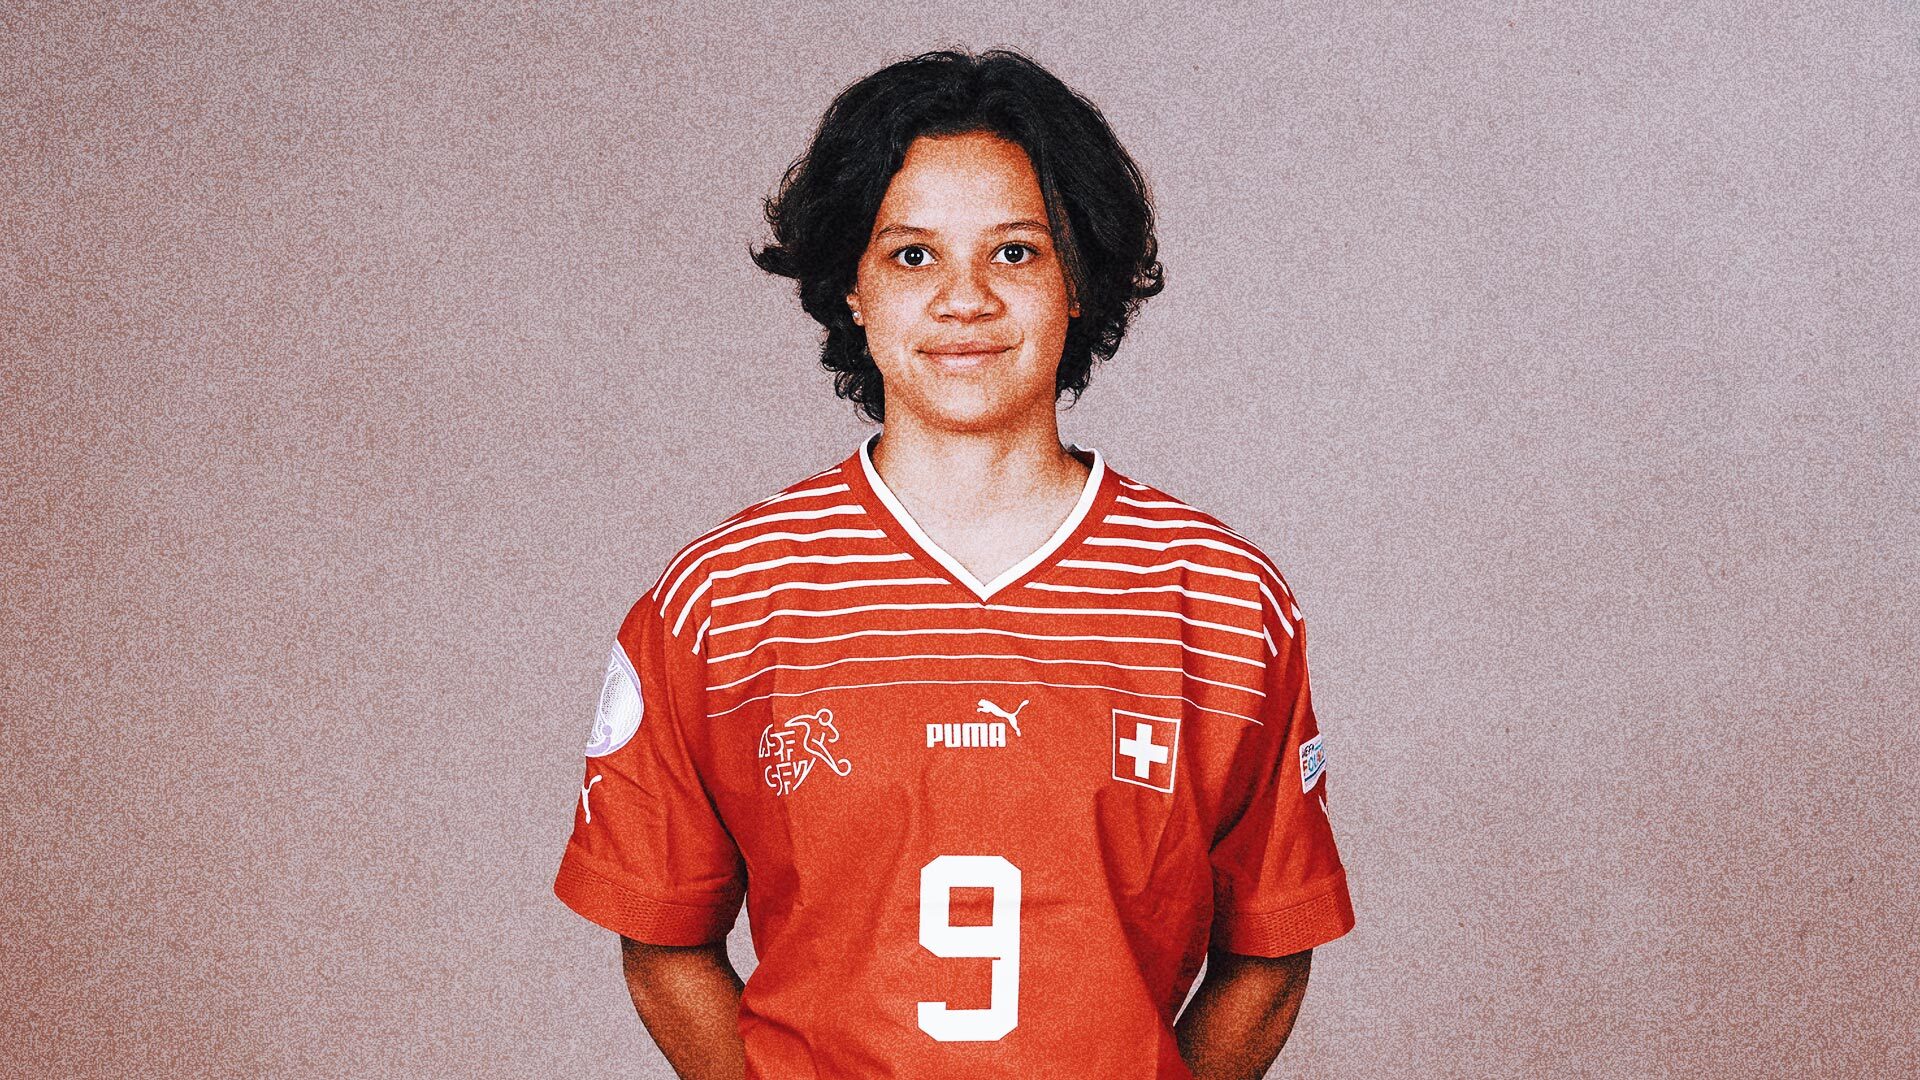 Switzerland picks 16-year-old midfielder Beney in Women's World Cup squad